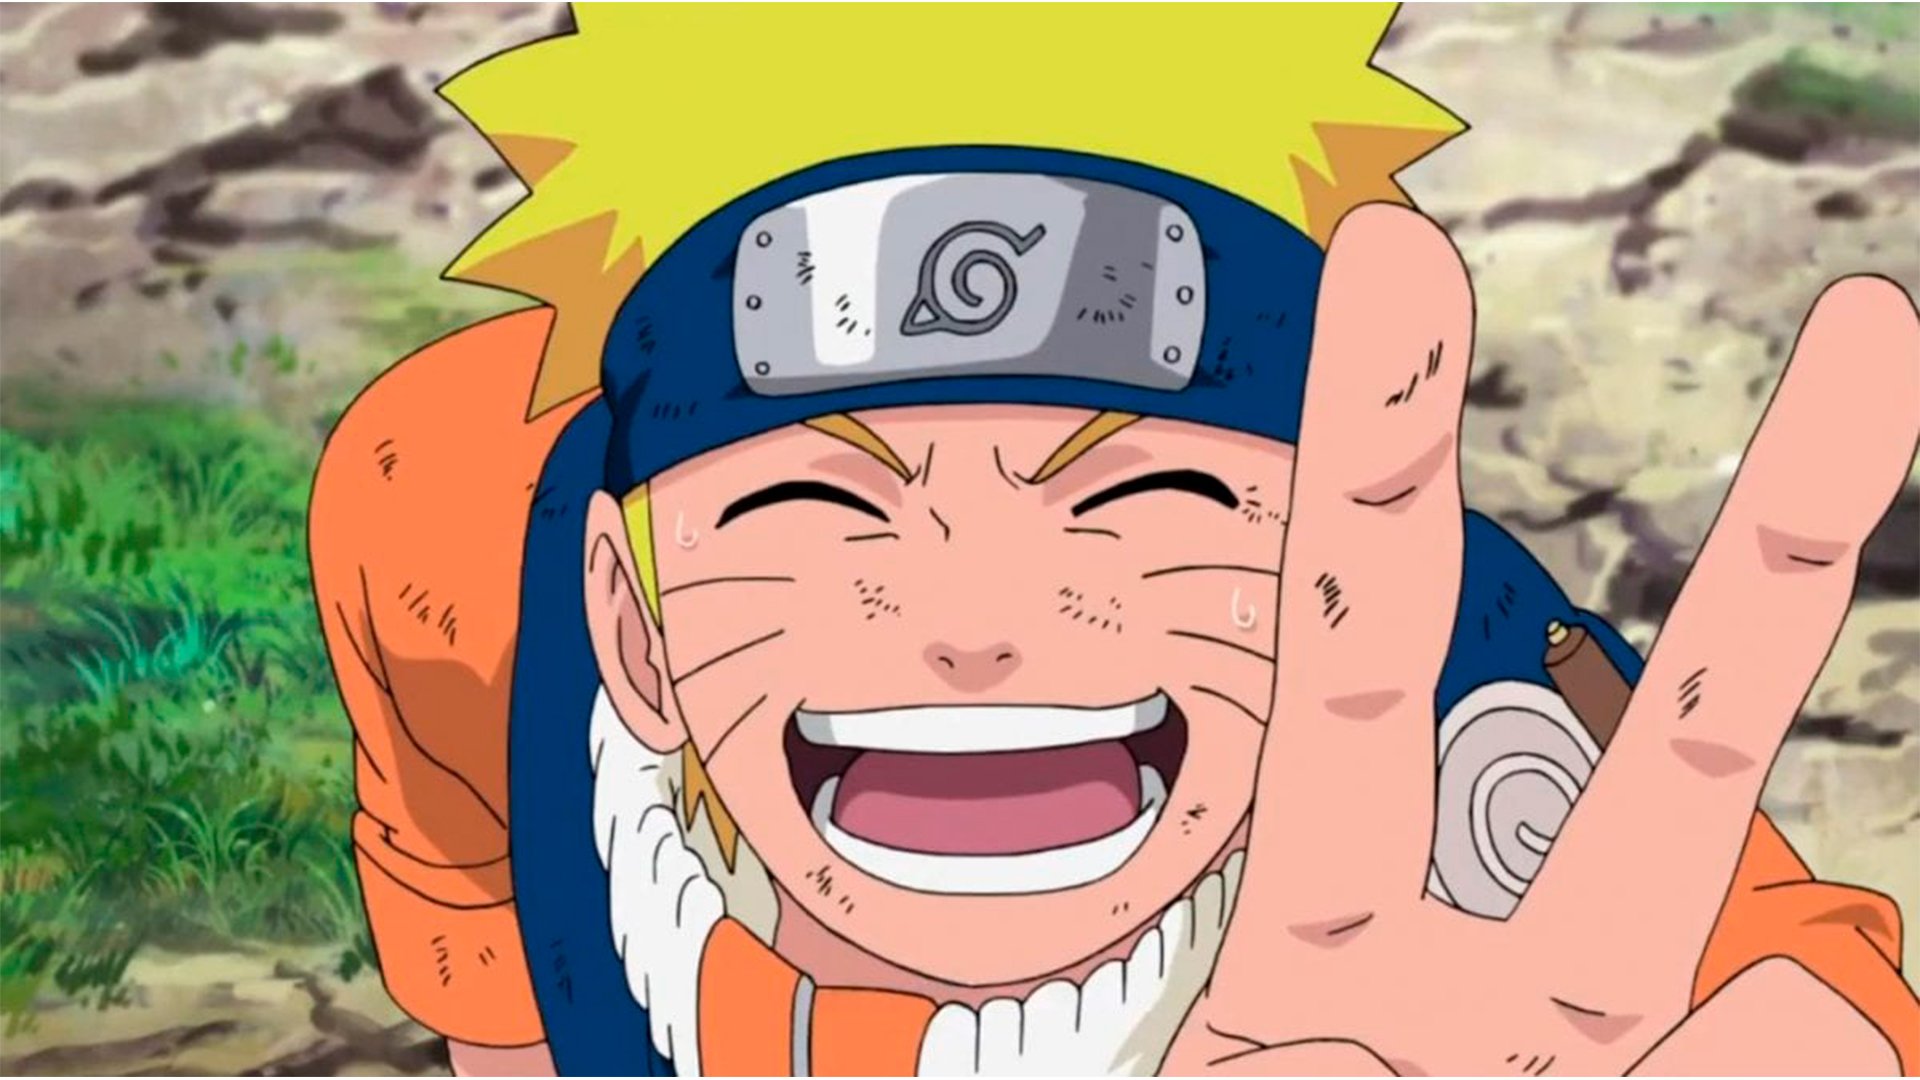 Naruto Clássico e Naruto Shippuden são animes muito grandes, que contam com muitos fillers que servem exclusivamente para estender a história.